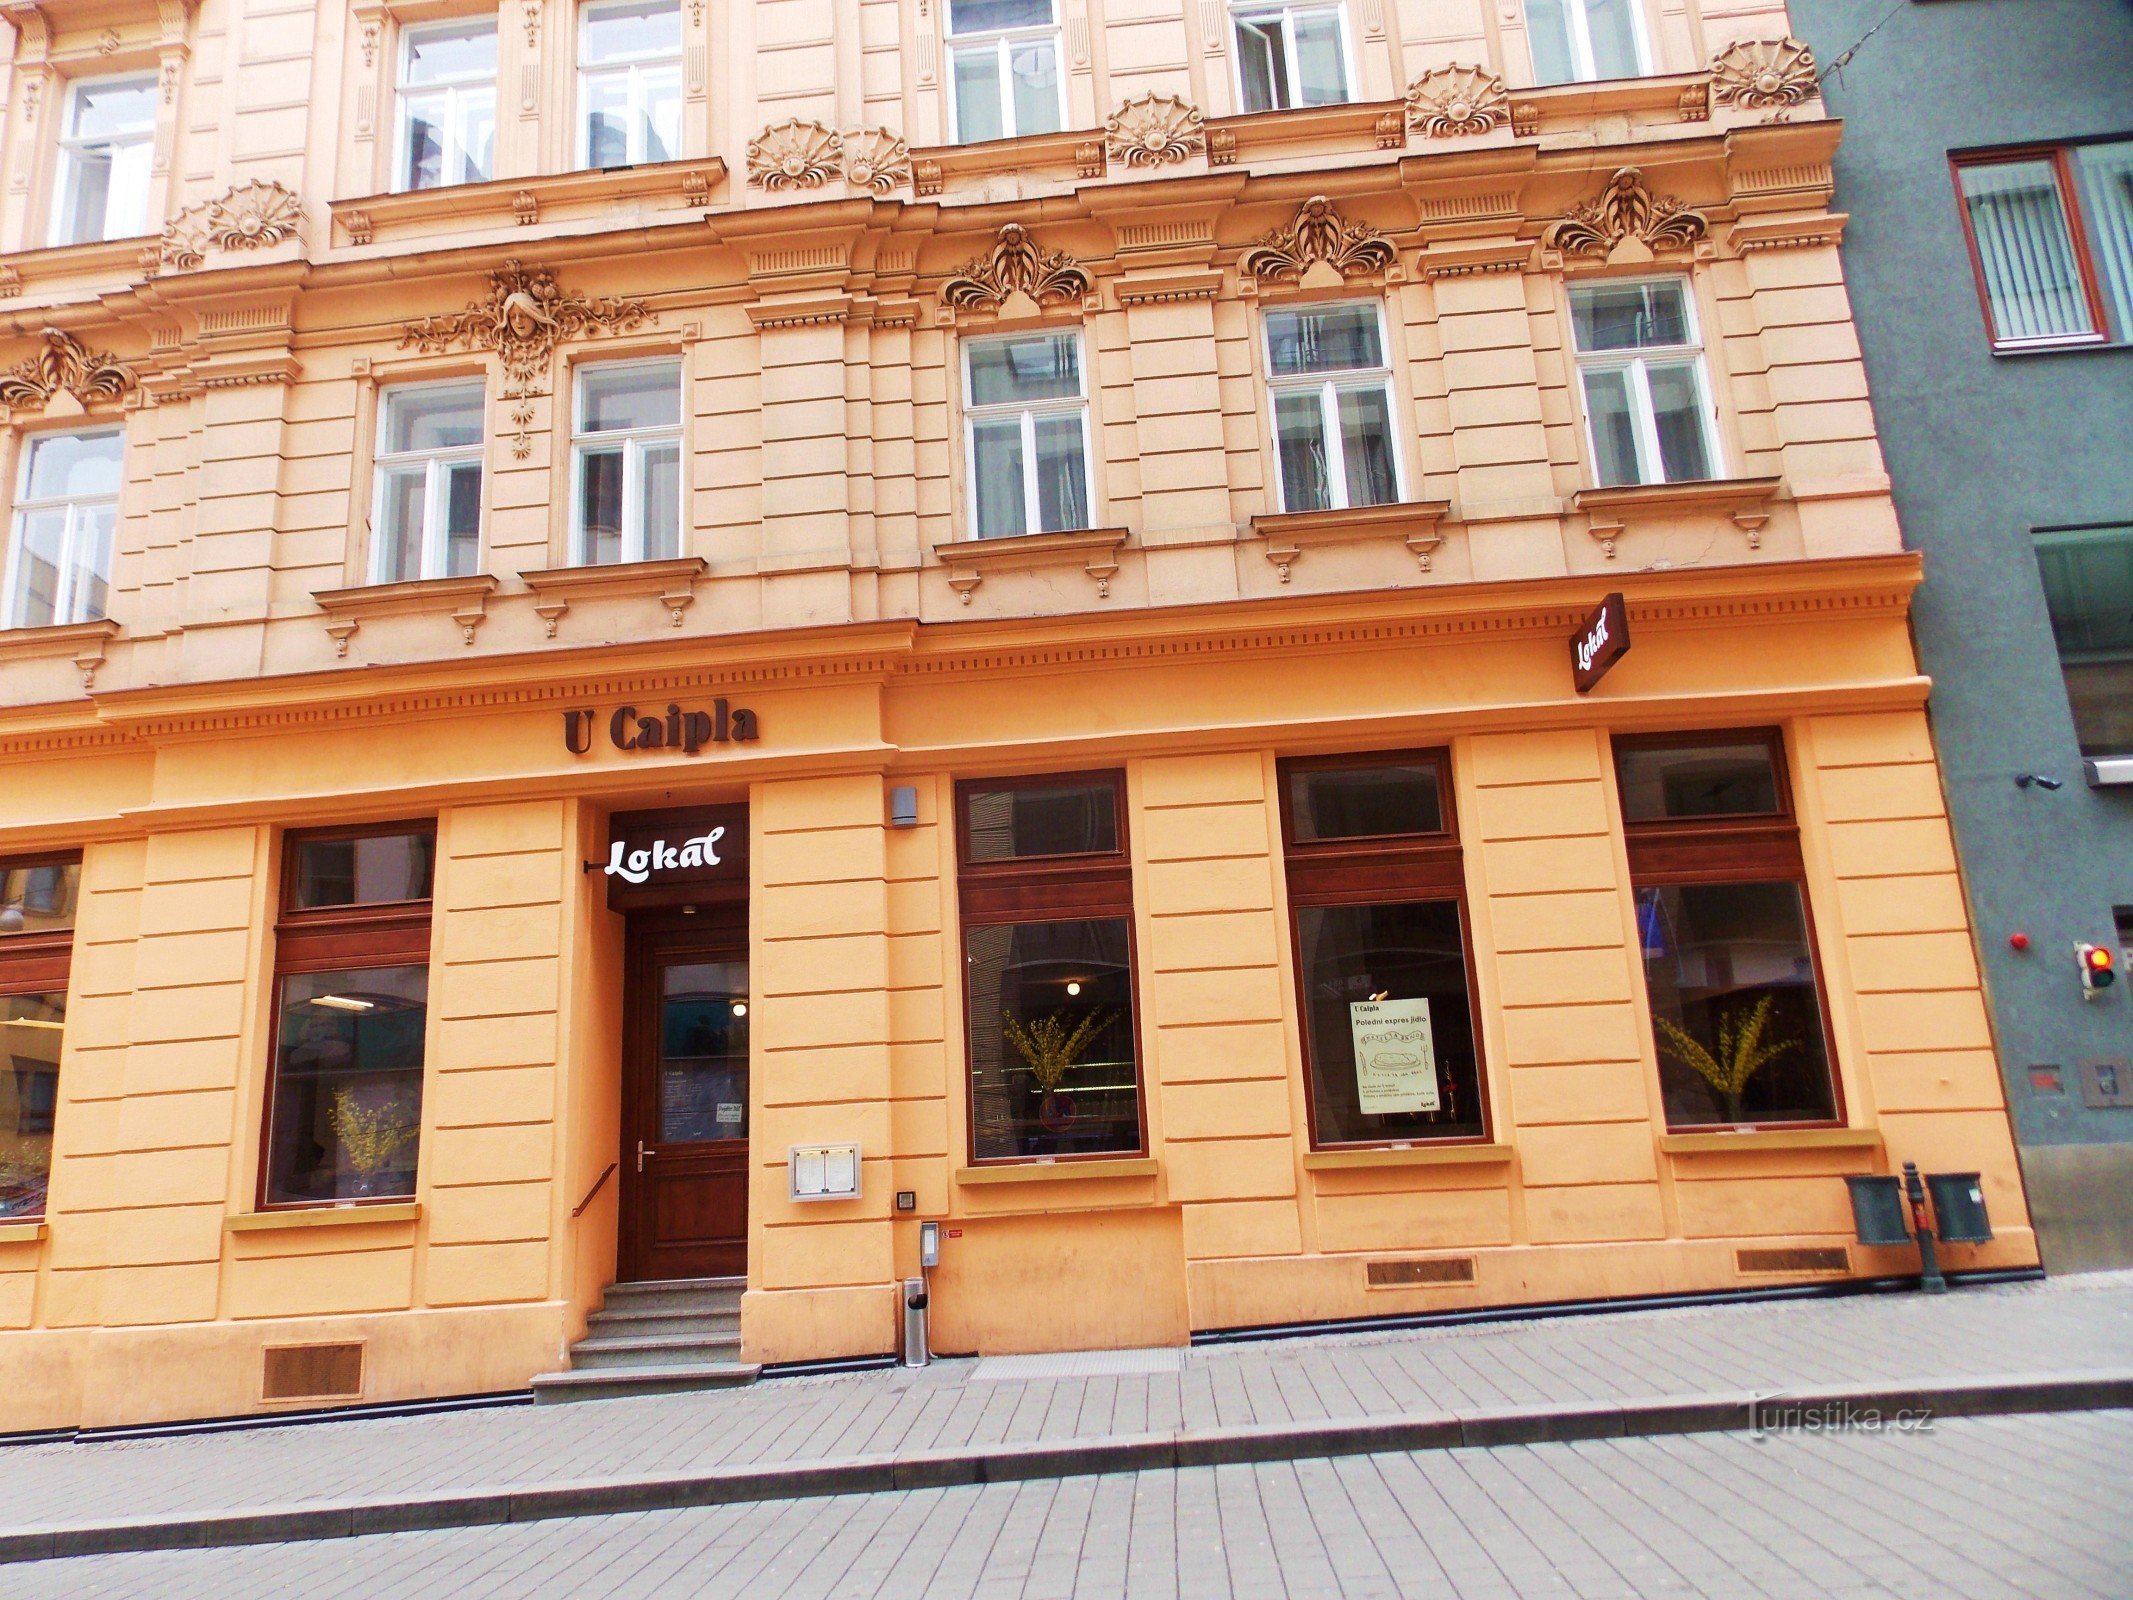 Restaurant - Lokal nær Caipla i centrum af Brno